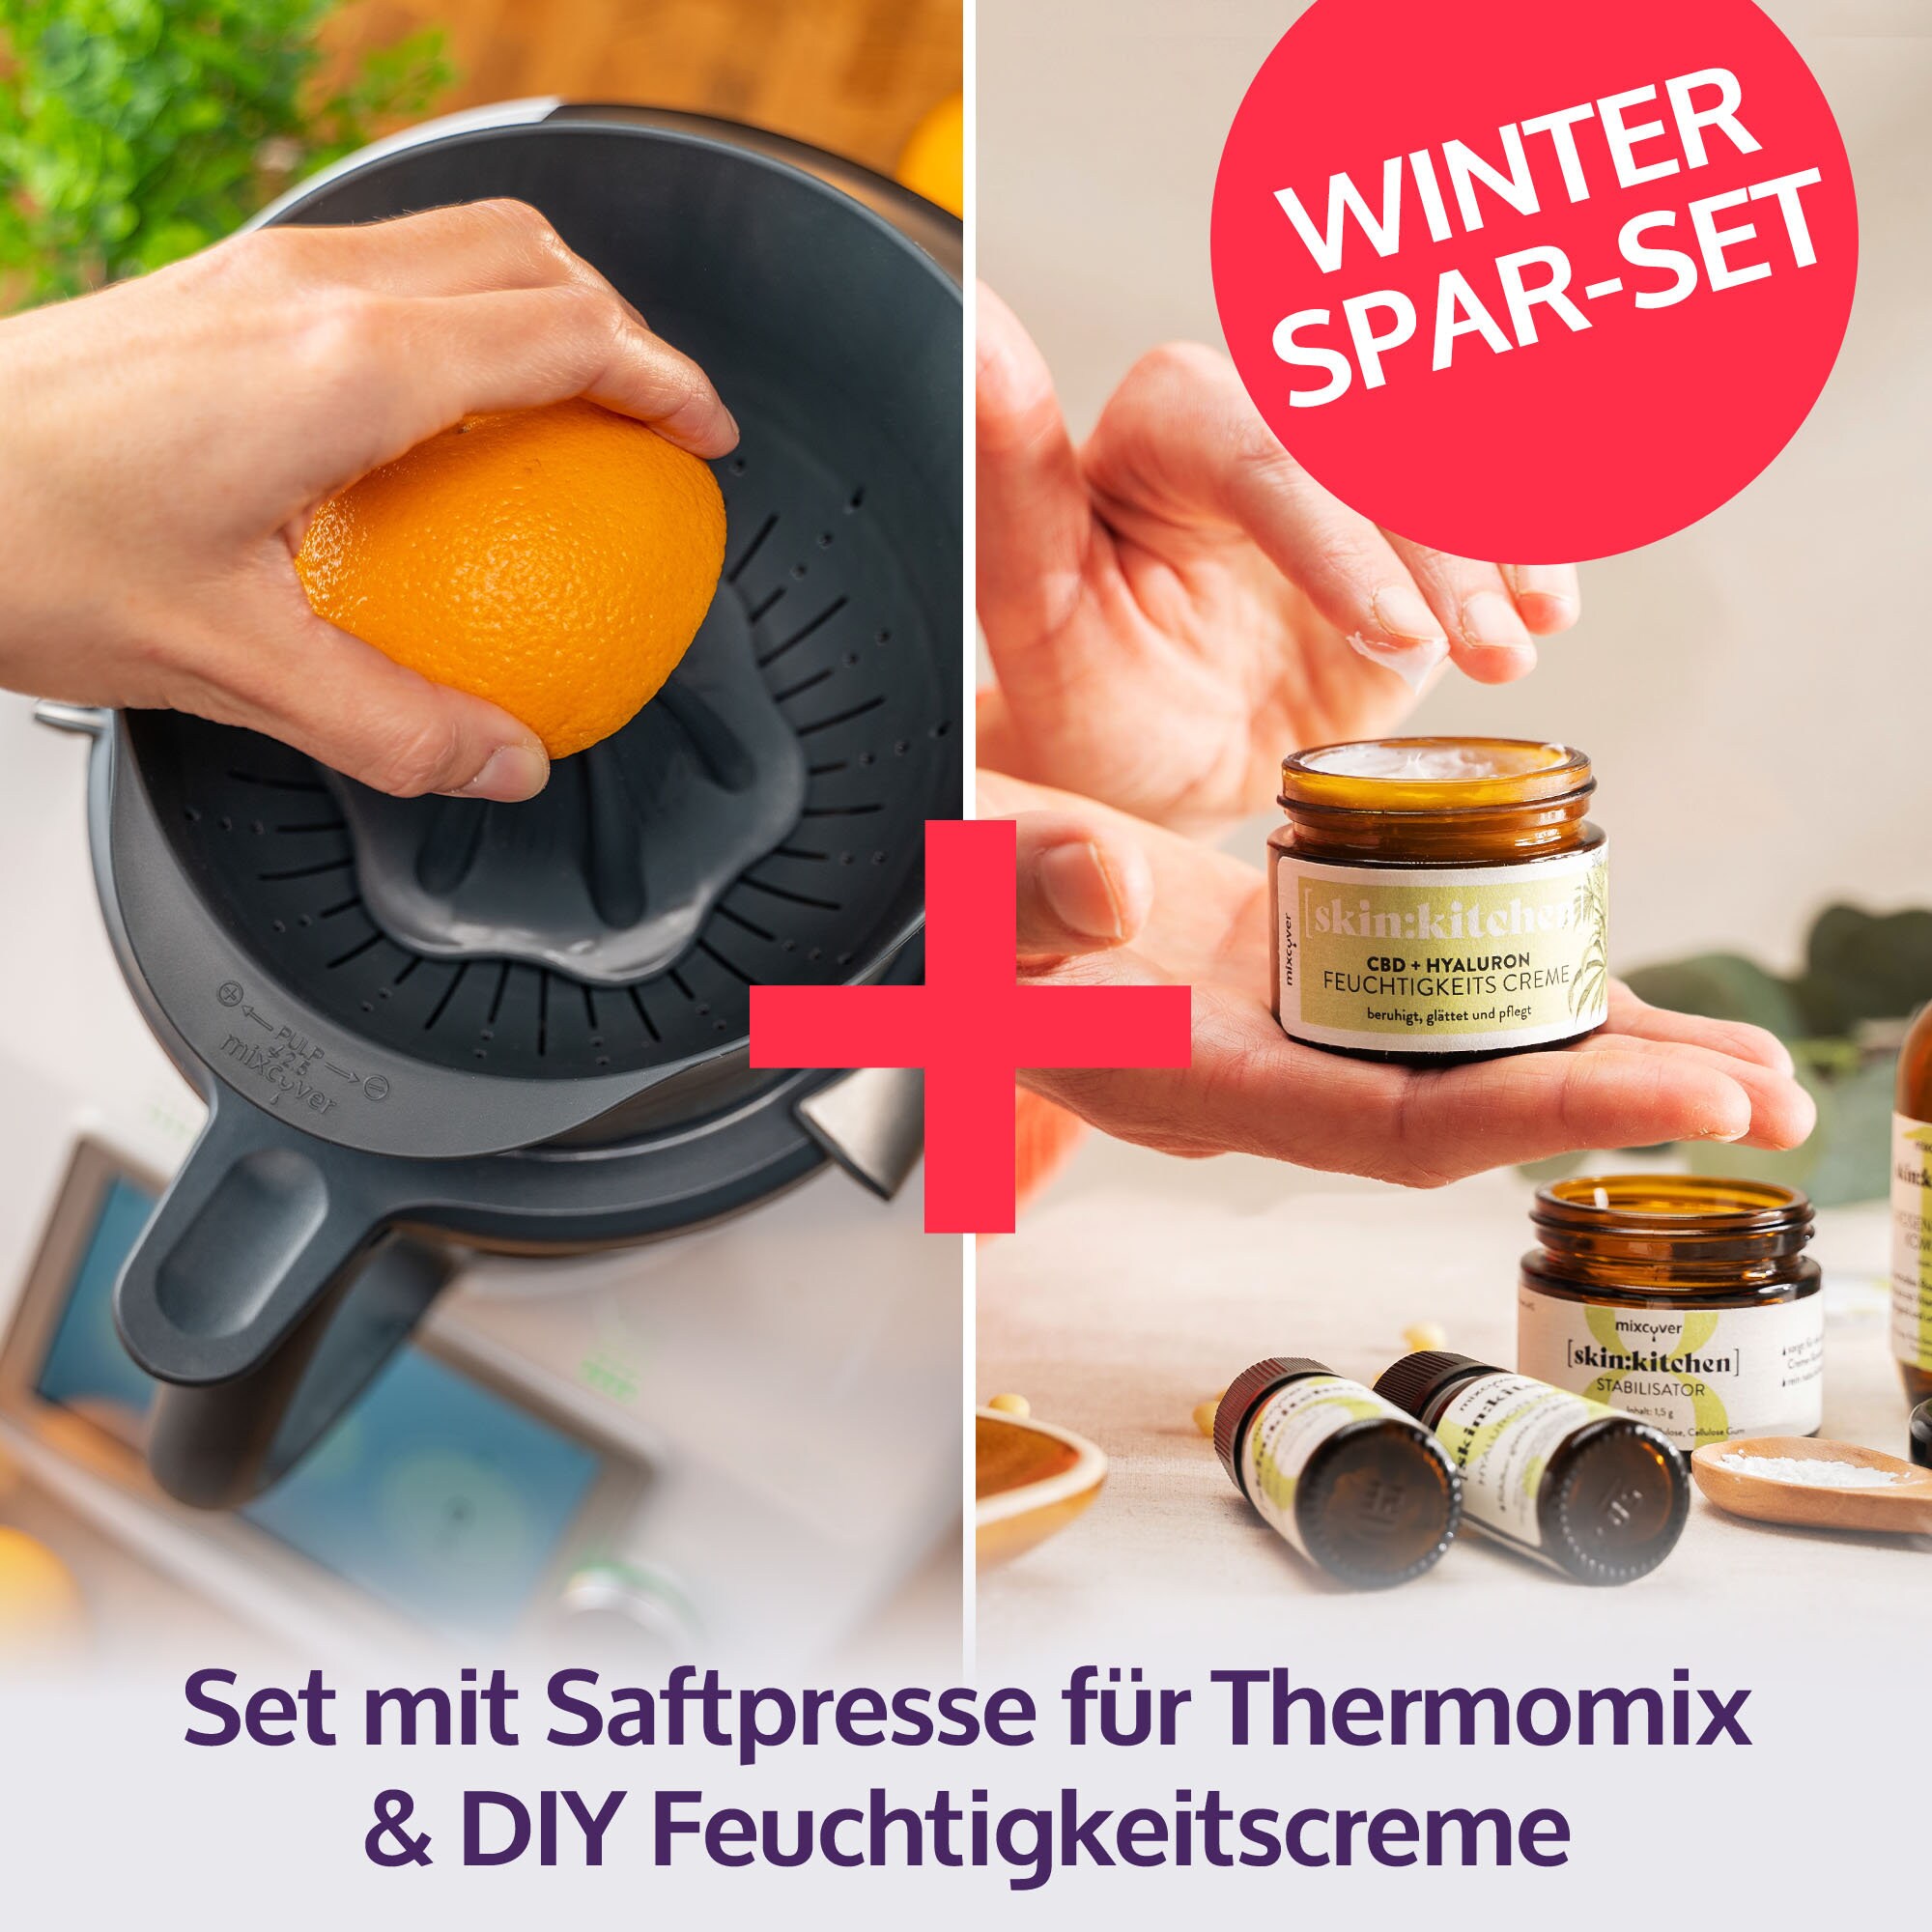 mixcover Juice Press Juicer Orange Press + DIY Natural Cosmetics Set Facial  Cream compatible avec Vorwerk Thermomix TM6 et TM5, idée cadeau, Thermomix